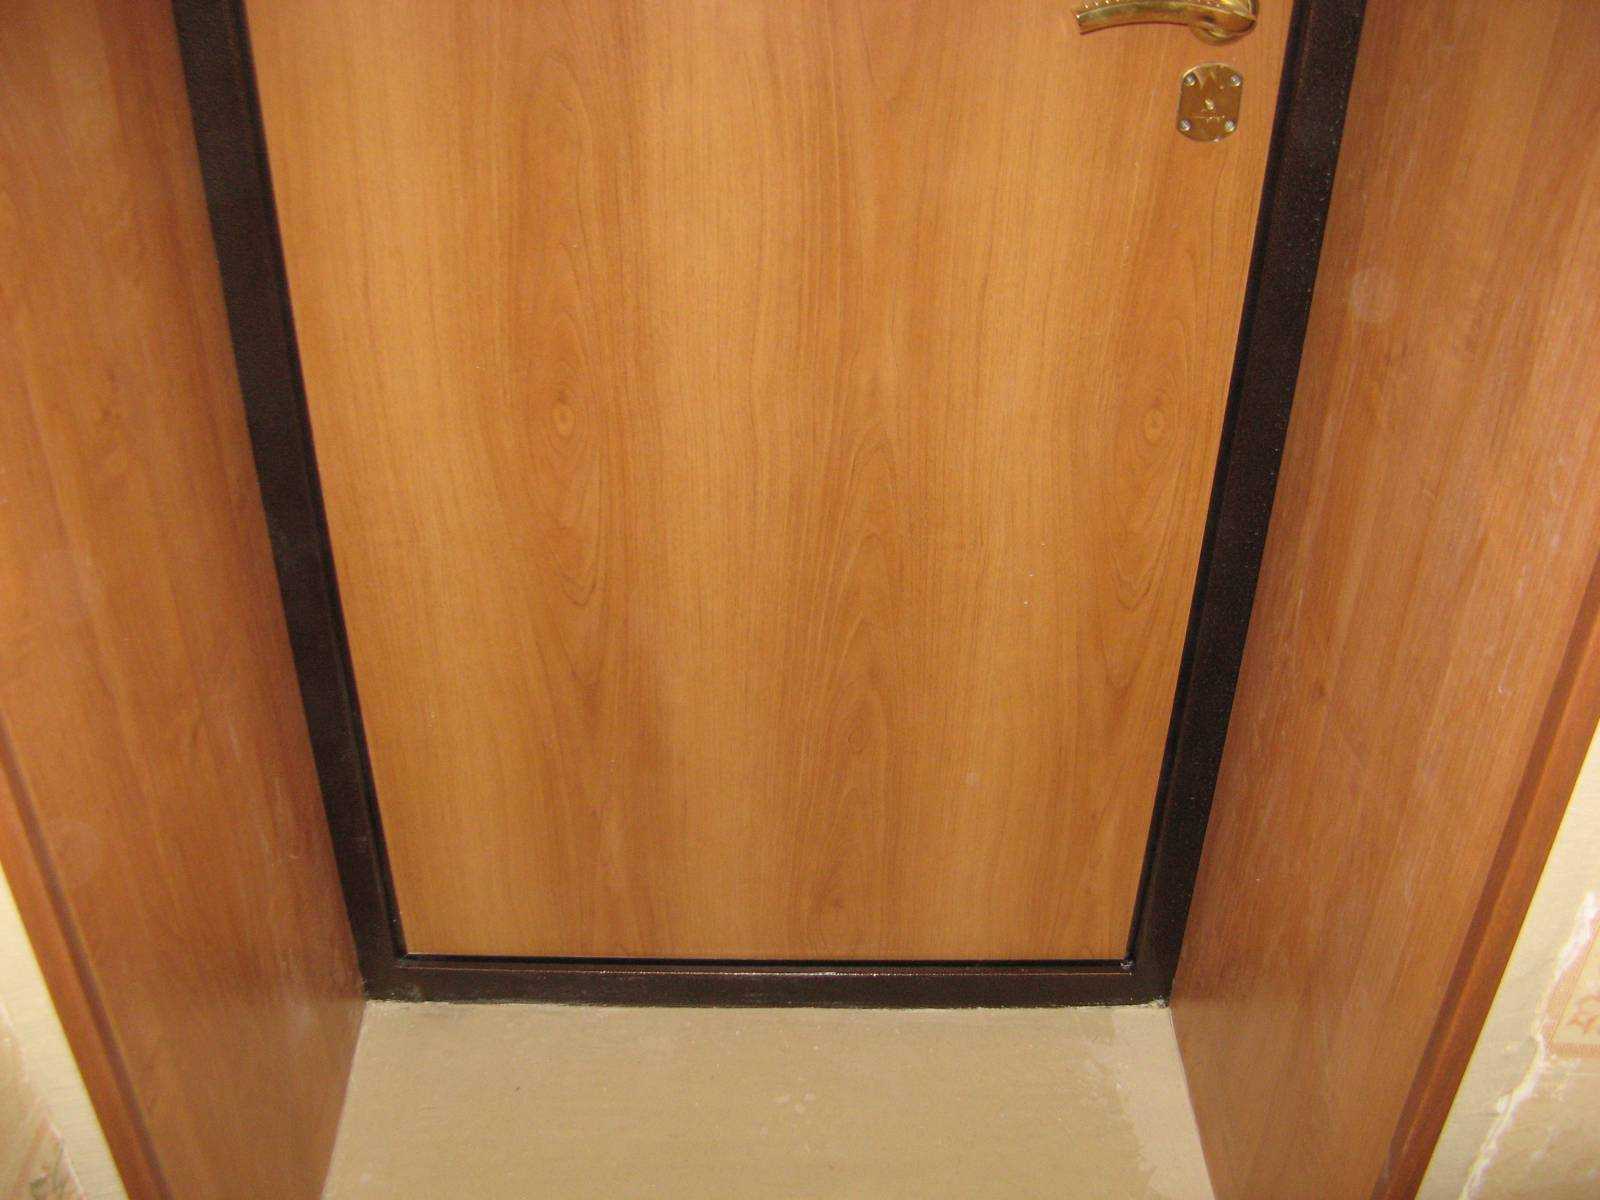 В процессе установки входной двери возникает необходимость отделки проема Заделка откосов требуется как снаружи дверного проема так и внутри